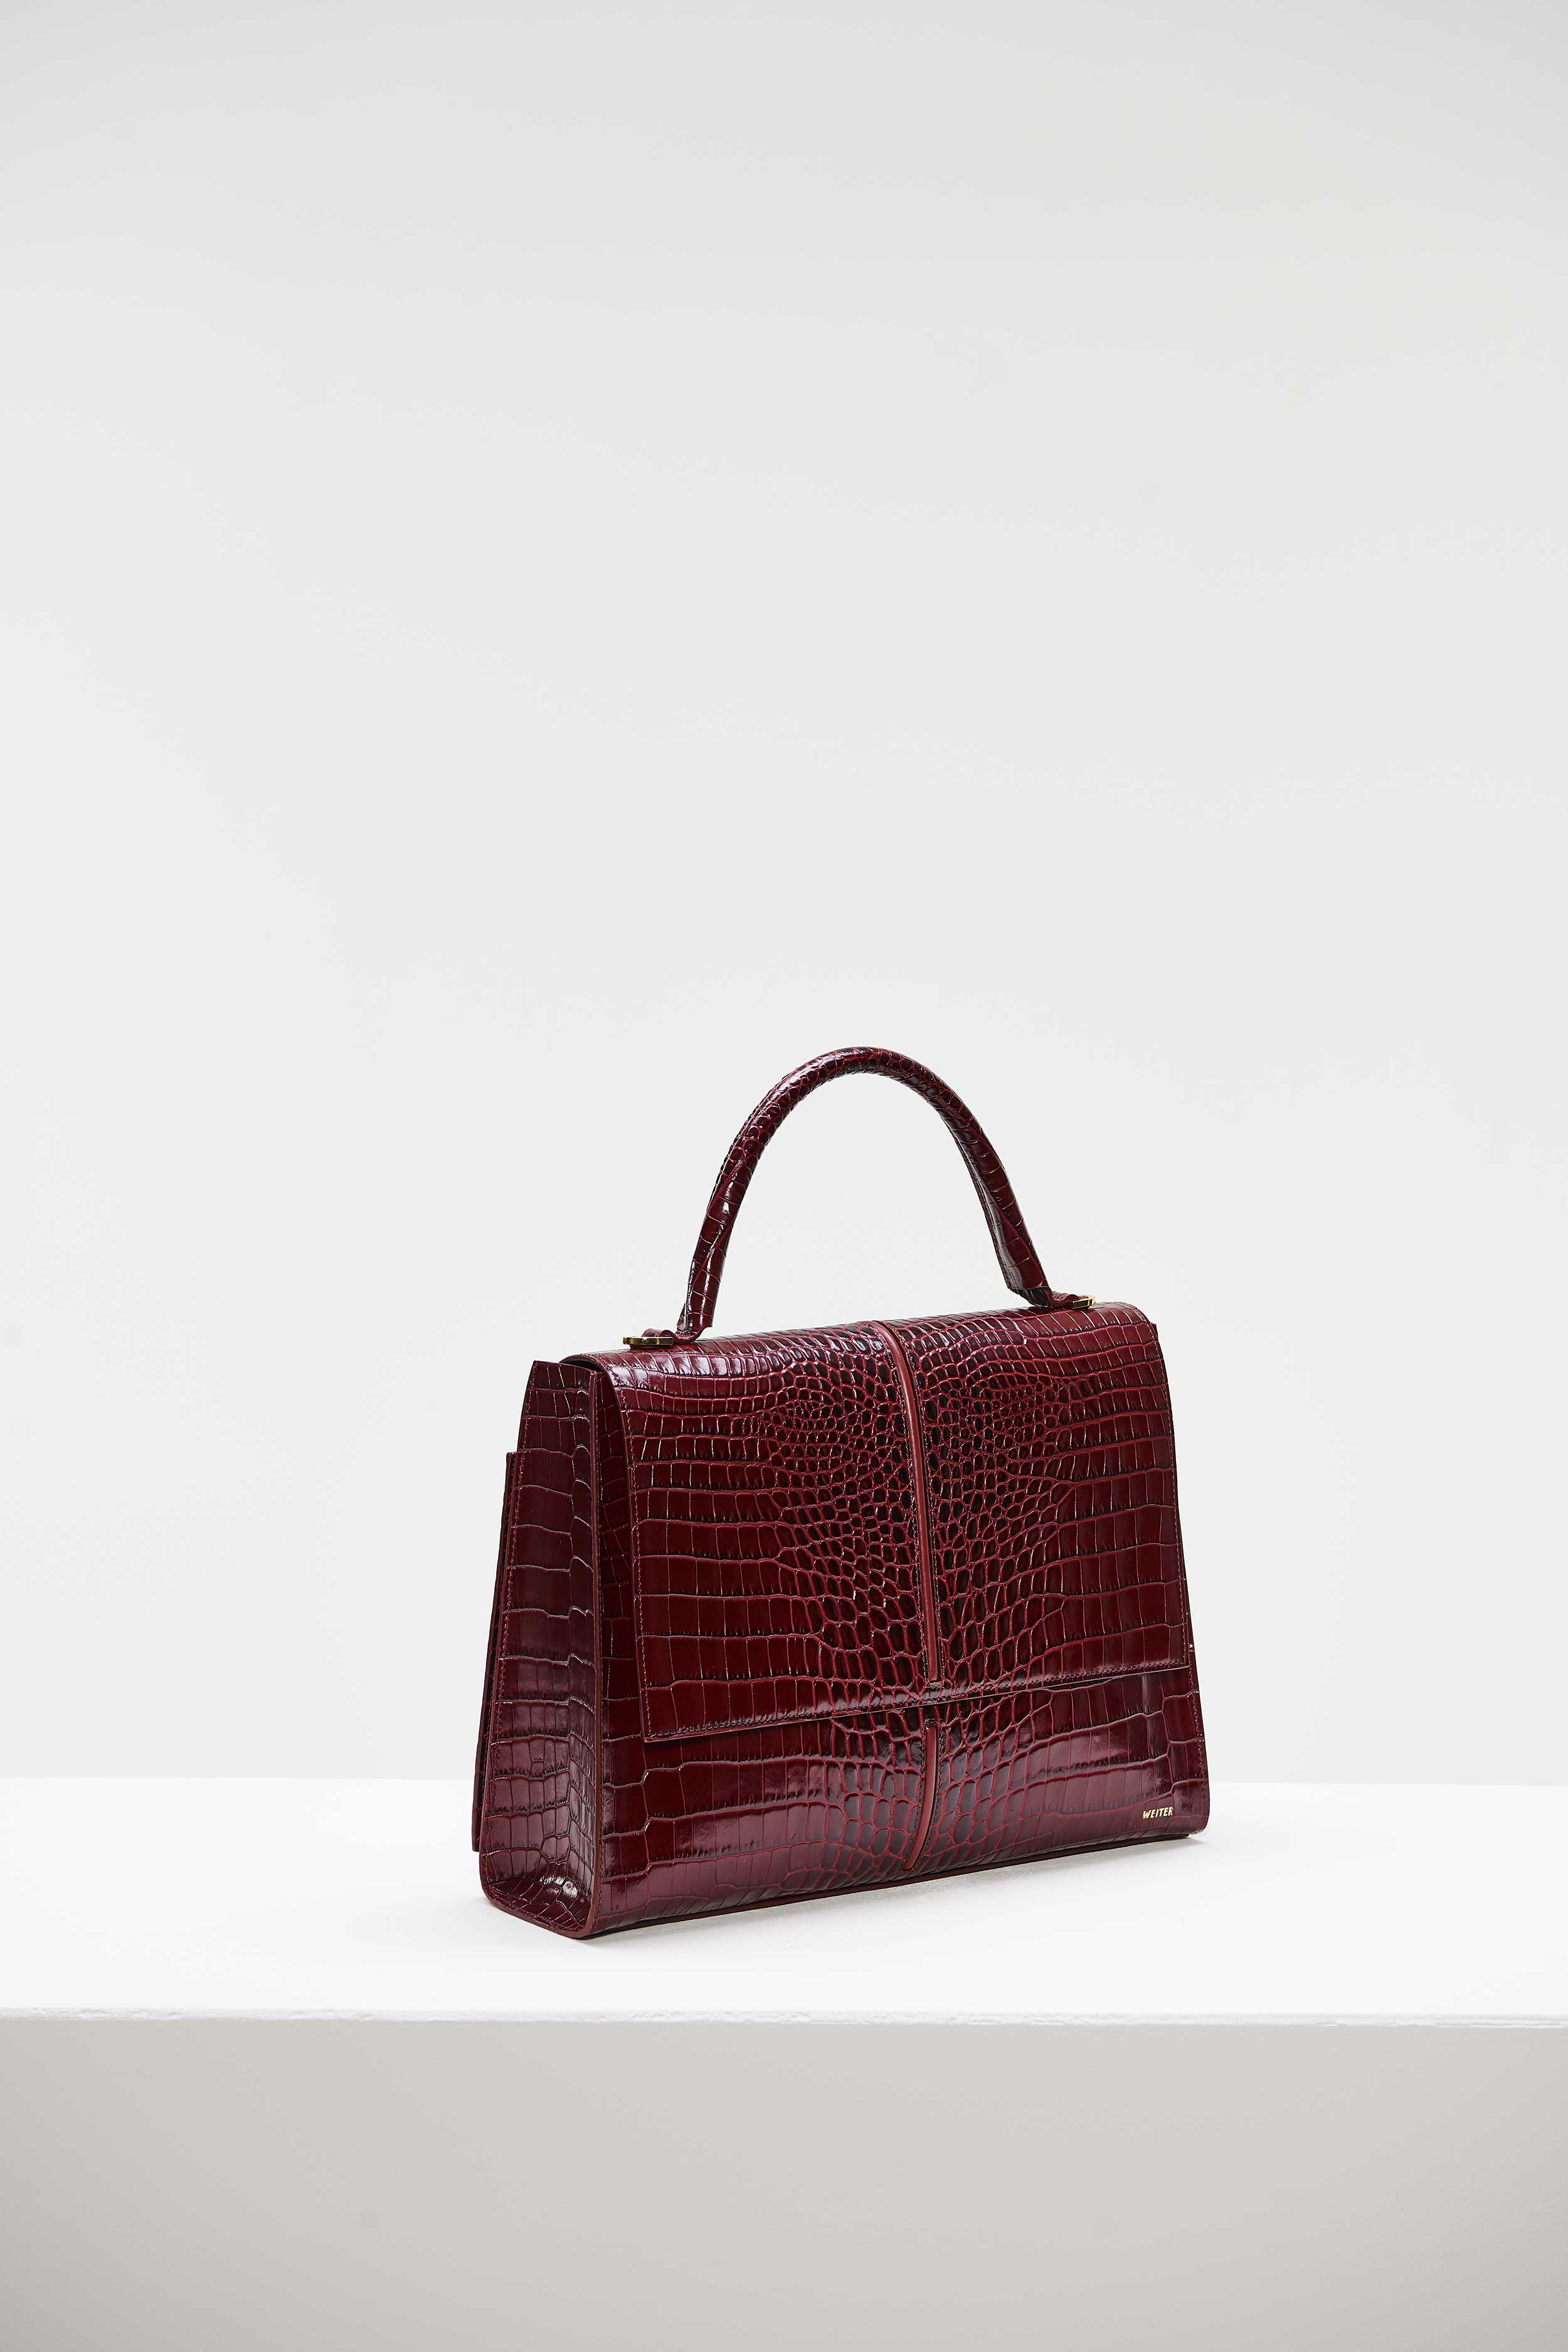 RKretro - Vintage handbags ❤️ We can post, arrange safe pick up